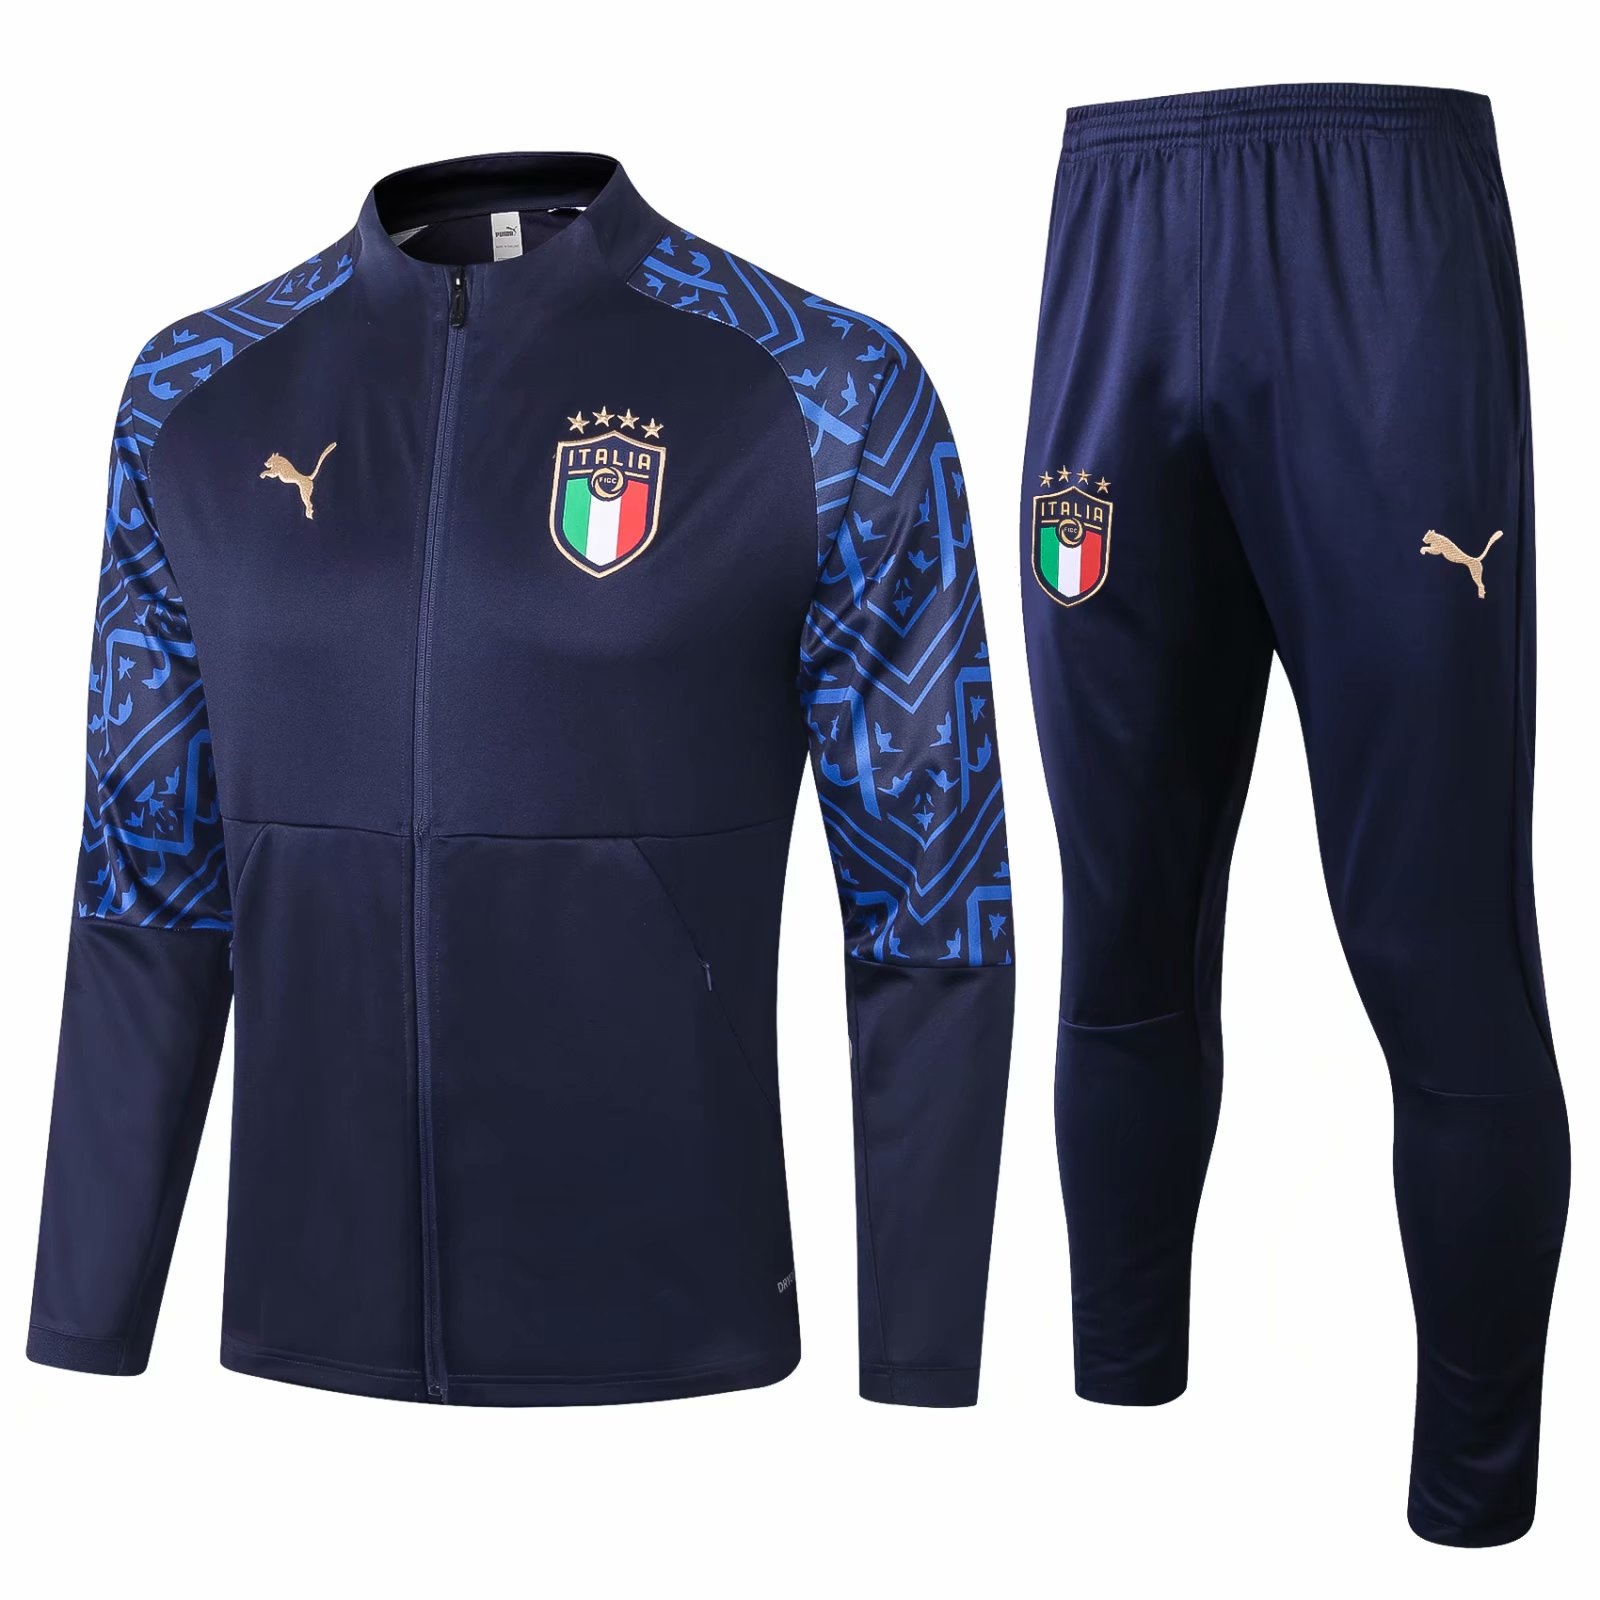 2020 Italian adult training Jacket Set